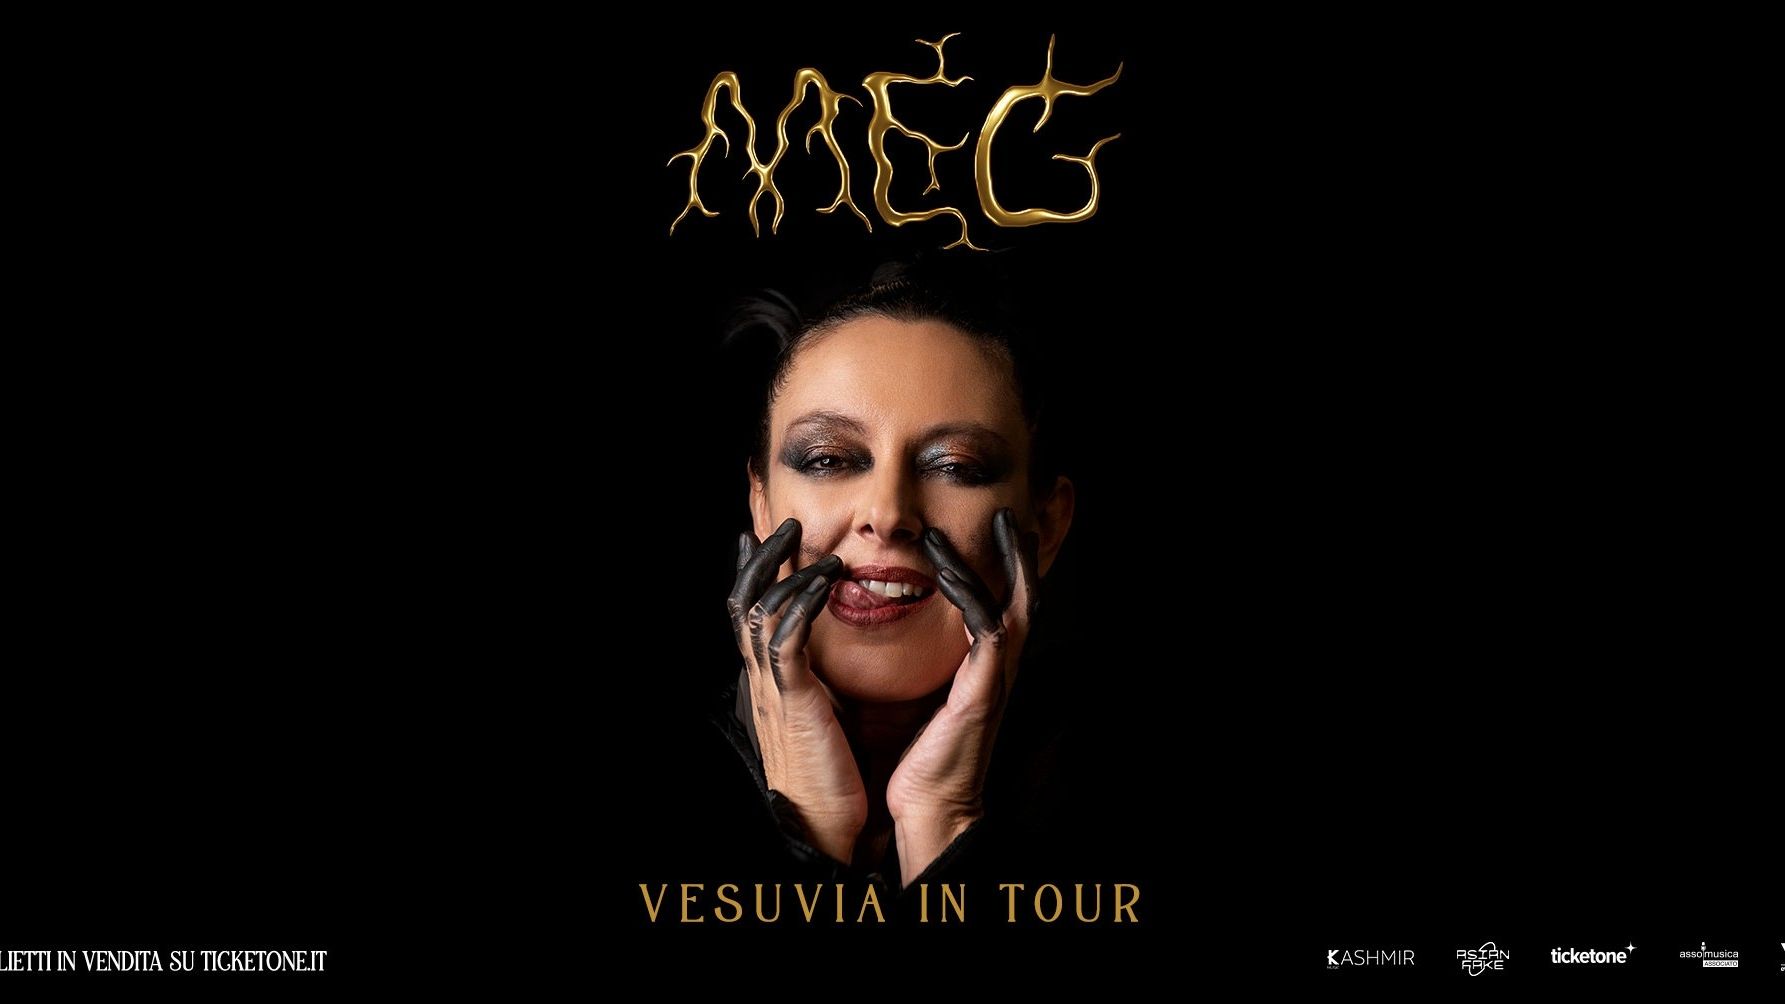 Meg - Vesuvia in tour